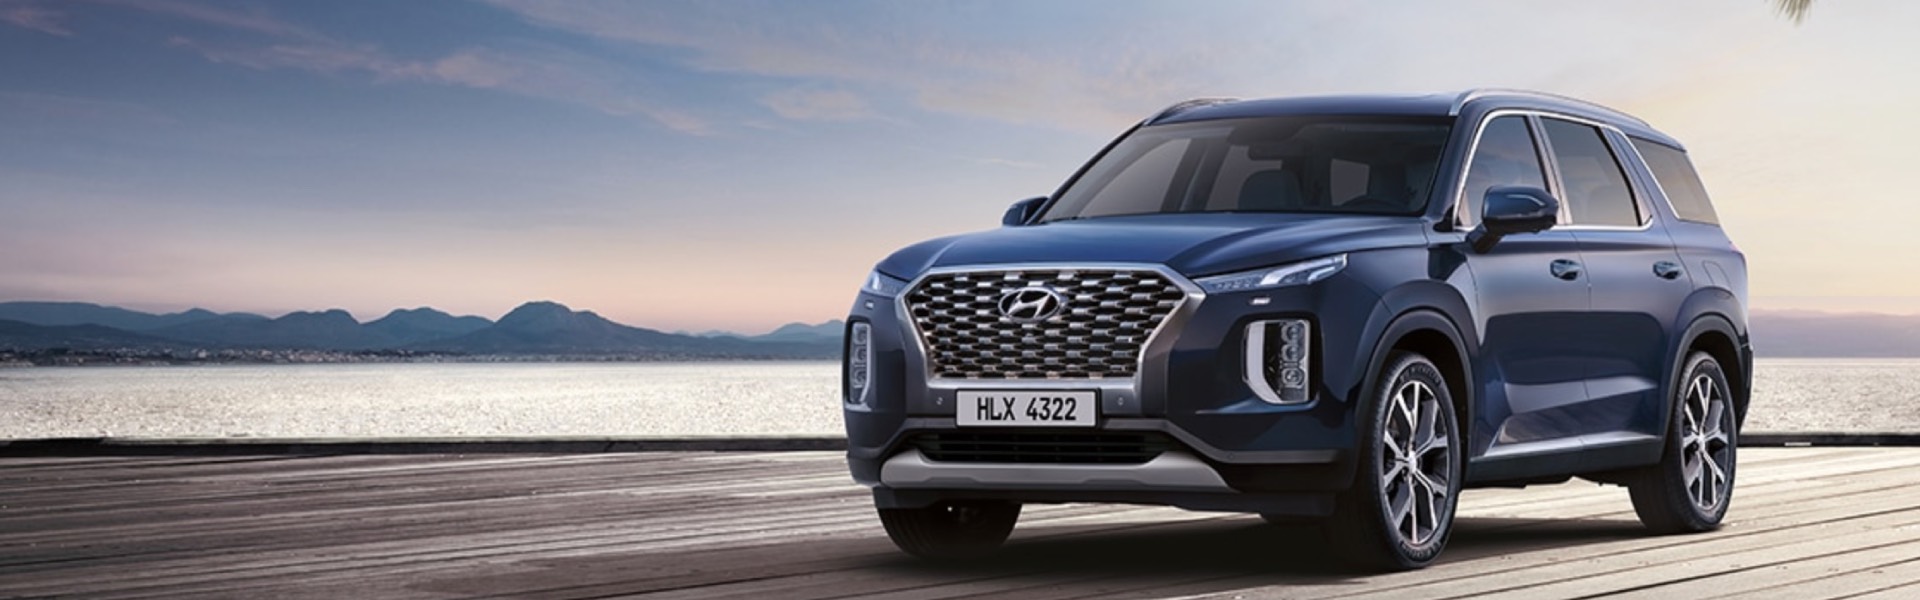 Модели Hyundai номинированы на премию “Авто года в Украине”